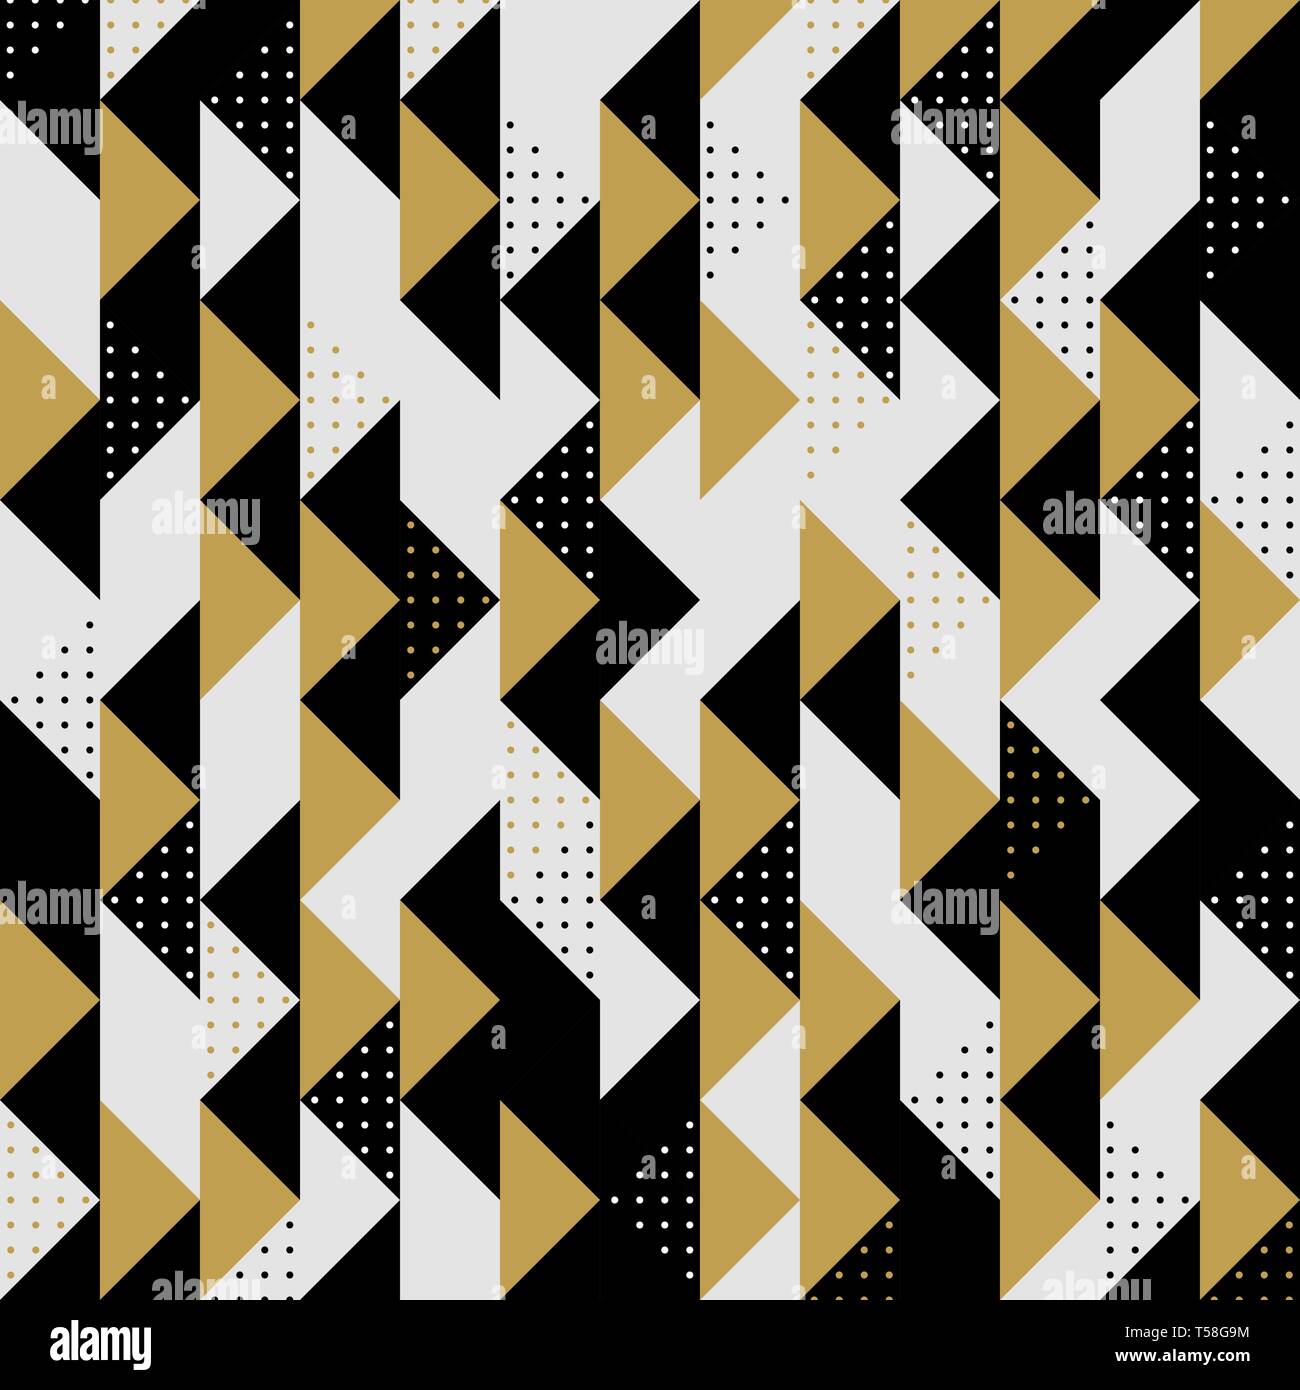 Moderne Dreieck Farben gold schwarze Punkte Muster vector Hintergrund. Sie können für die Pattern, ad, Platz von Text verwenden, Cover Artwork. Abbildung Stock Vektor